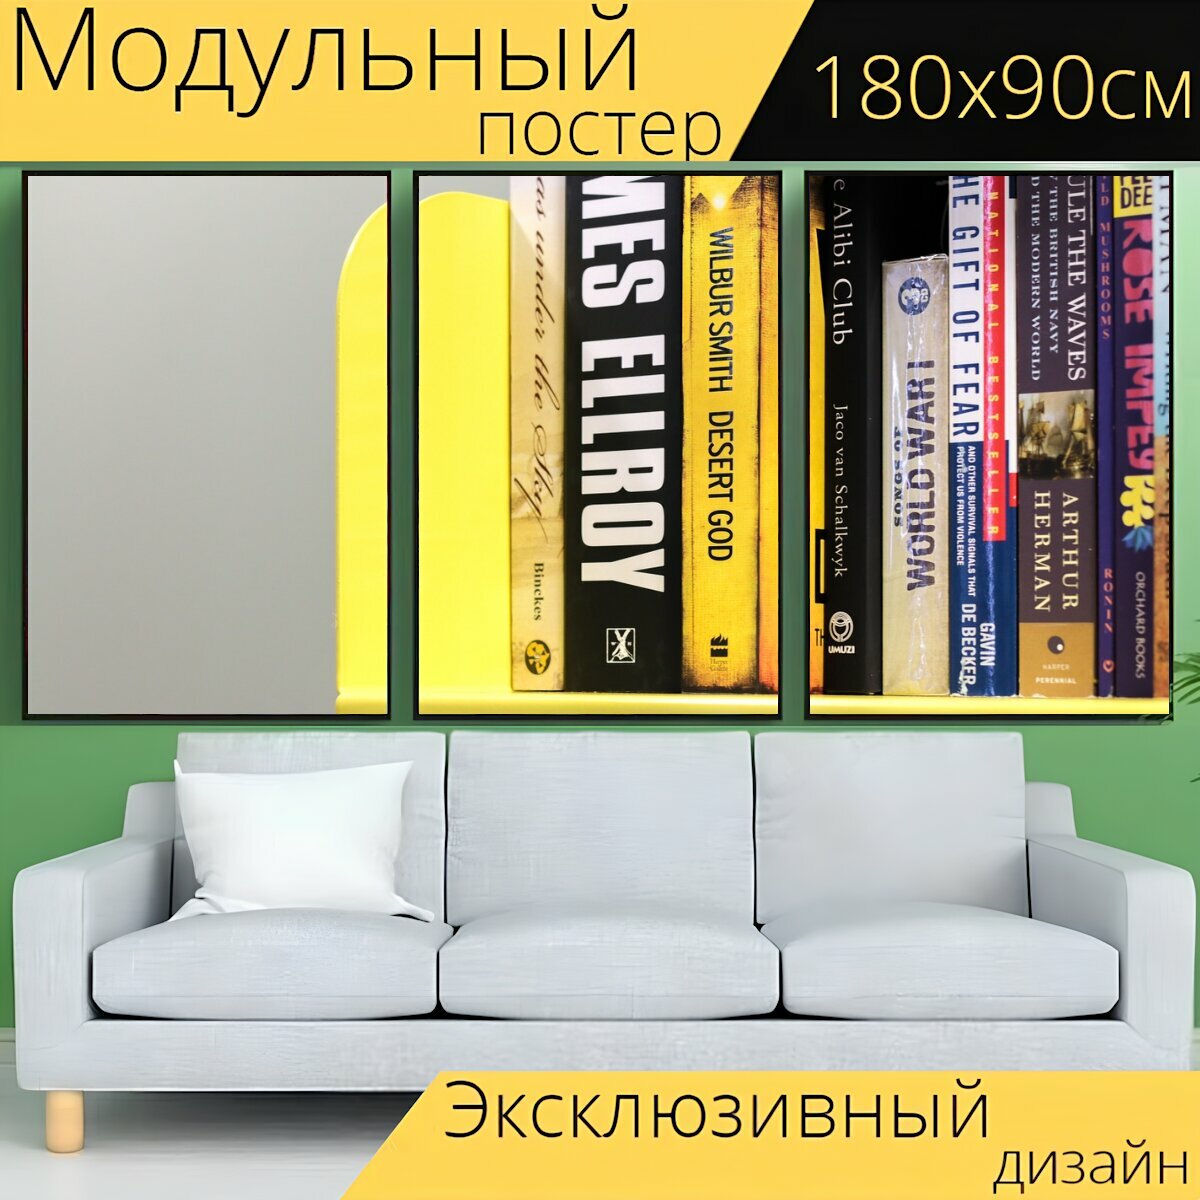 Модульный постер "Книжная полка, желтый, книги" 180 x 90 см. для интерьера